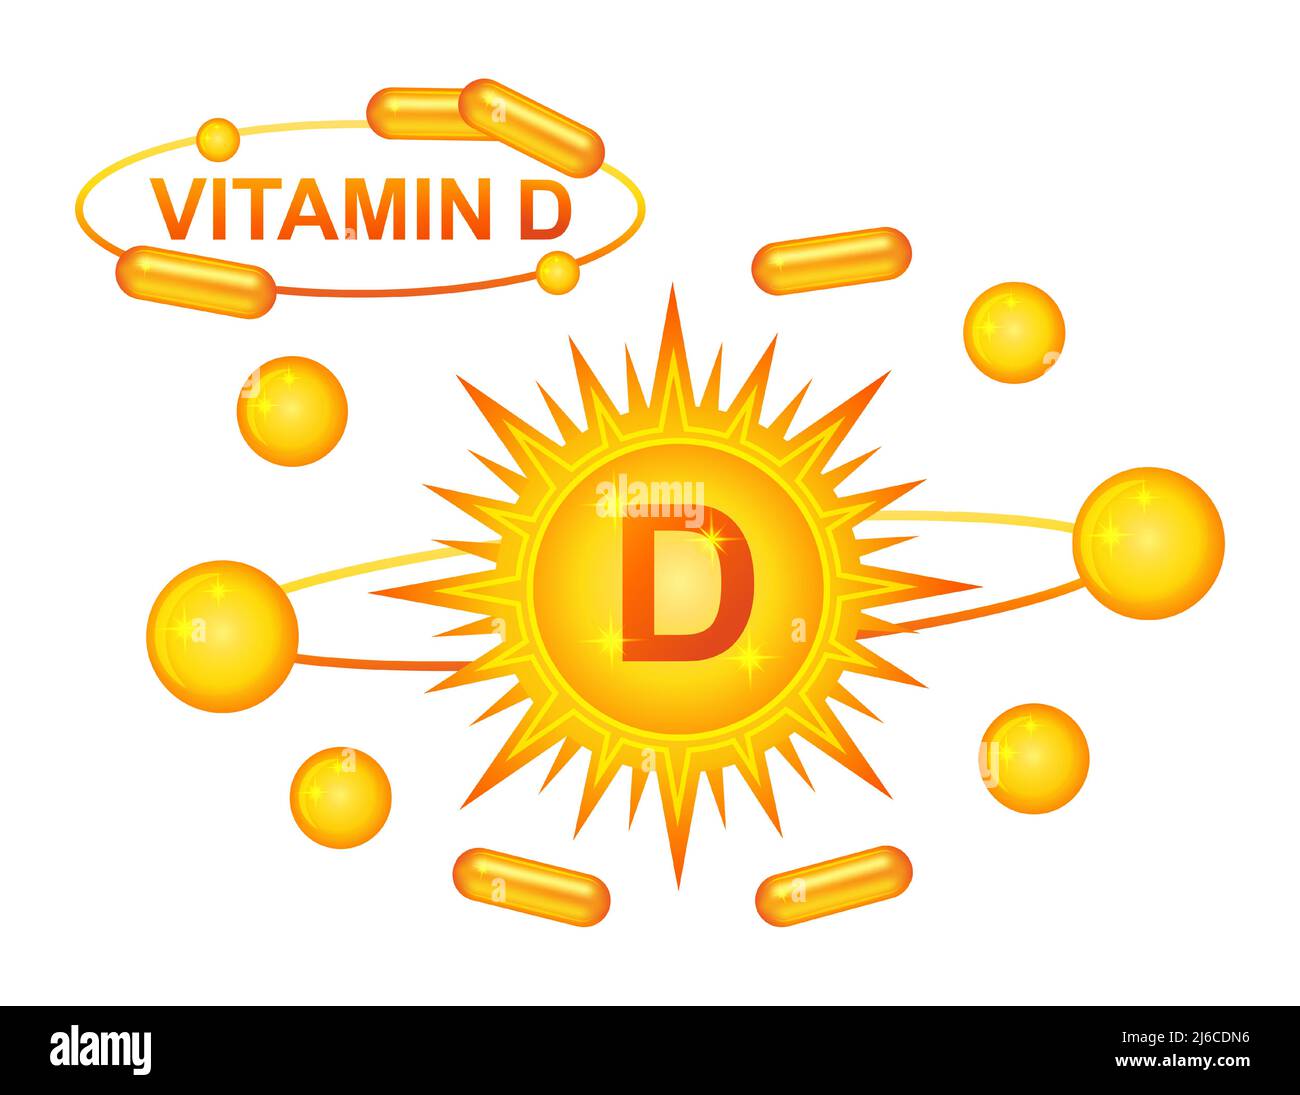 Vitamine D complément alimentaire de régime, soleil jaune avec capsule de pilule de médicament. Comprimé de cholécalciférol médical, pharmacie chimique vecteur de médicament de santé Illustration de Vecteur